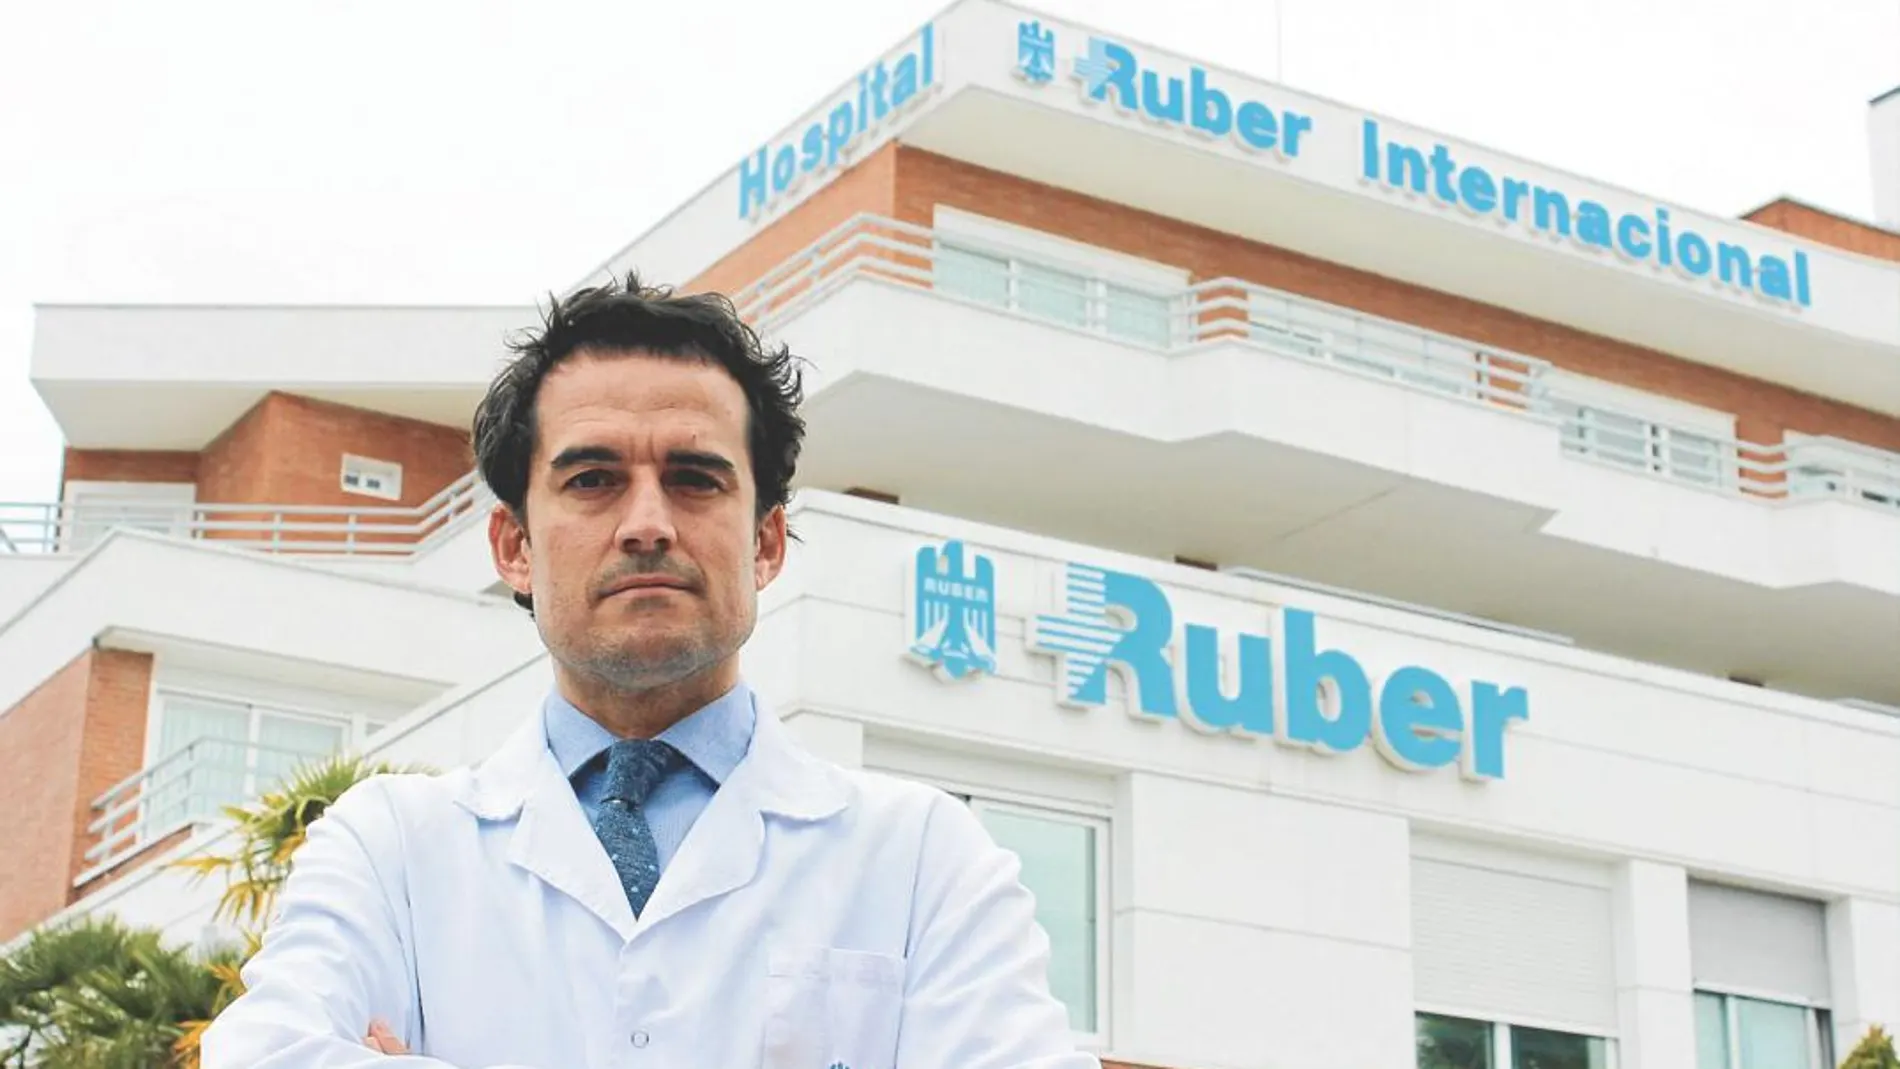 El doctor César Casado Sánchez, especialista en Cirugía Plástica, Estética y Reparadora del Hospital Ruber Internacional